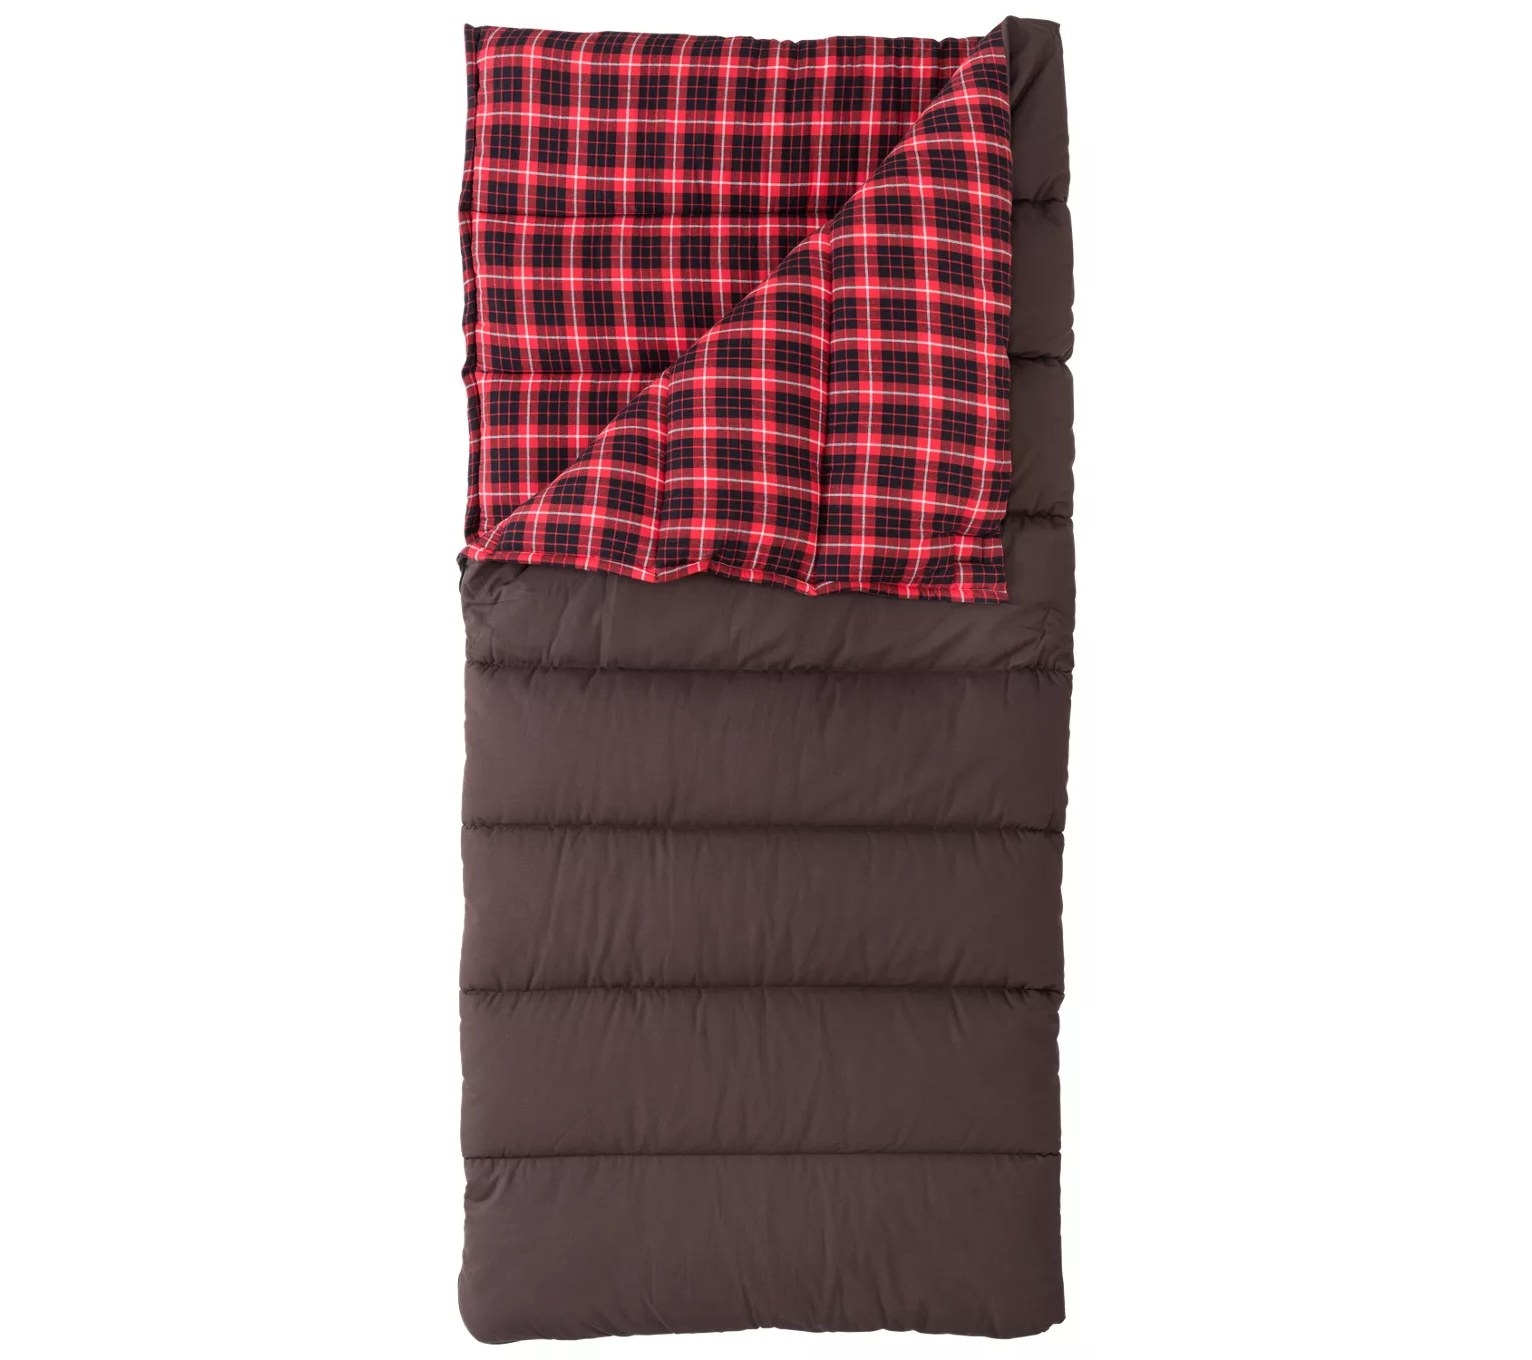 the brown and plaid sleeping bag